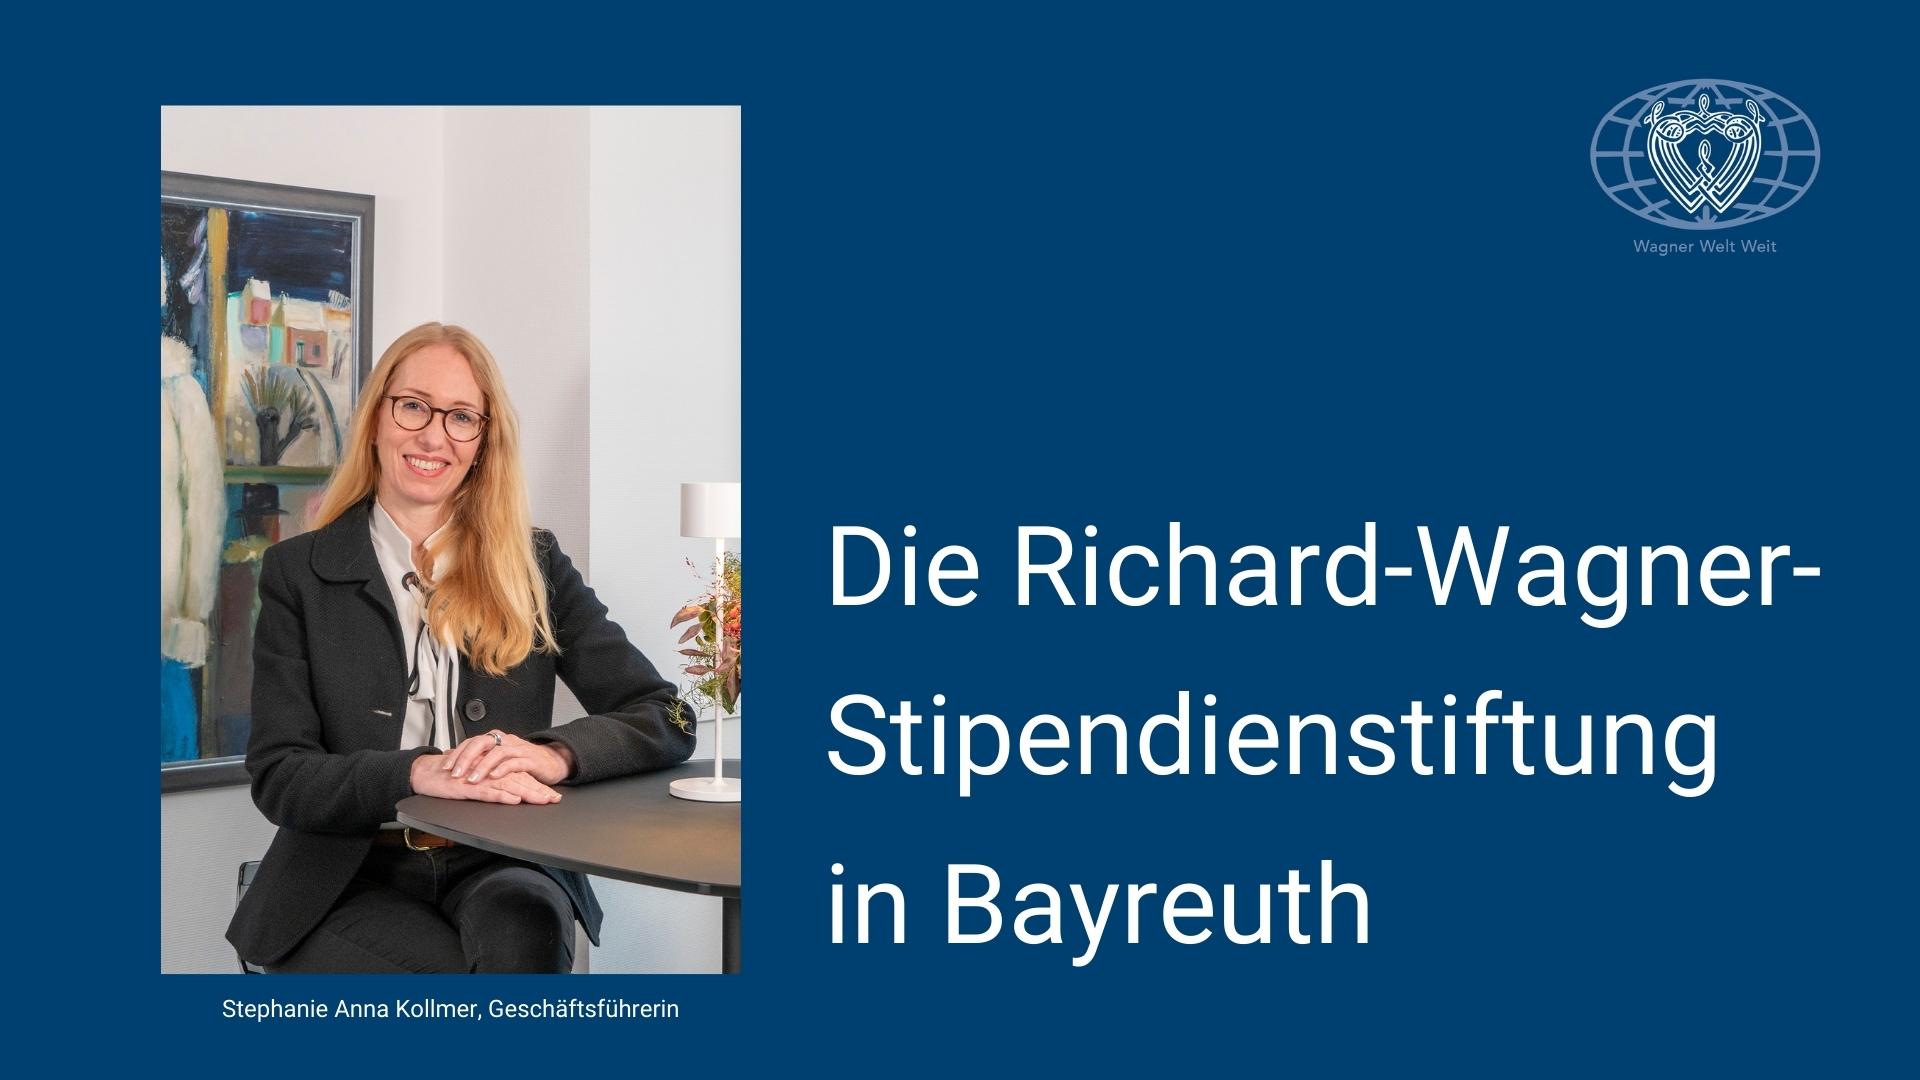 Die Richard-Wagner-Stipendienstiftung in Bayreuth